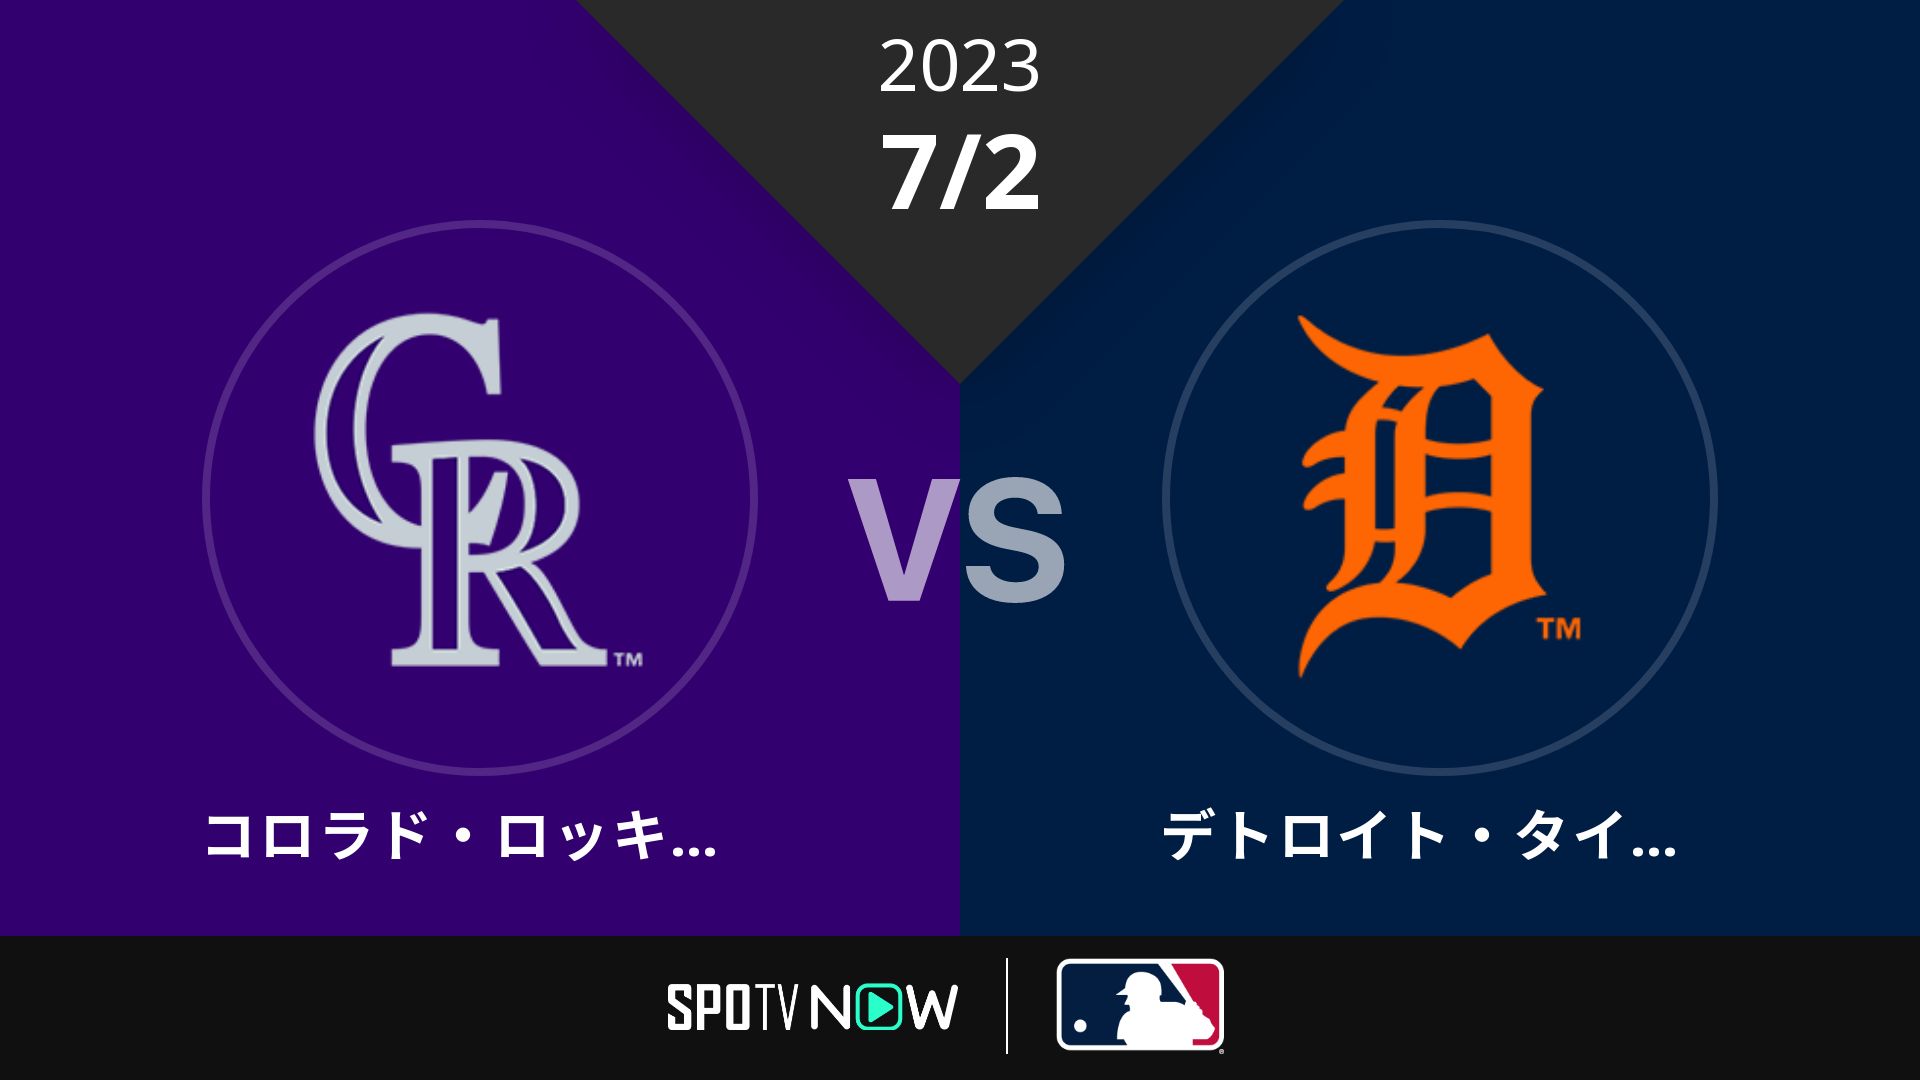 2023/7/2 ロッキーズ vs タイガース [MLB]